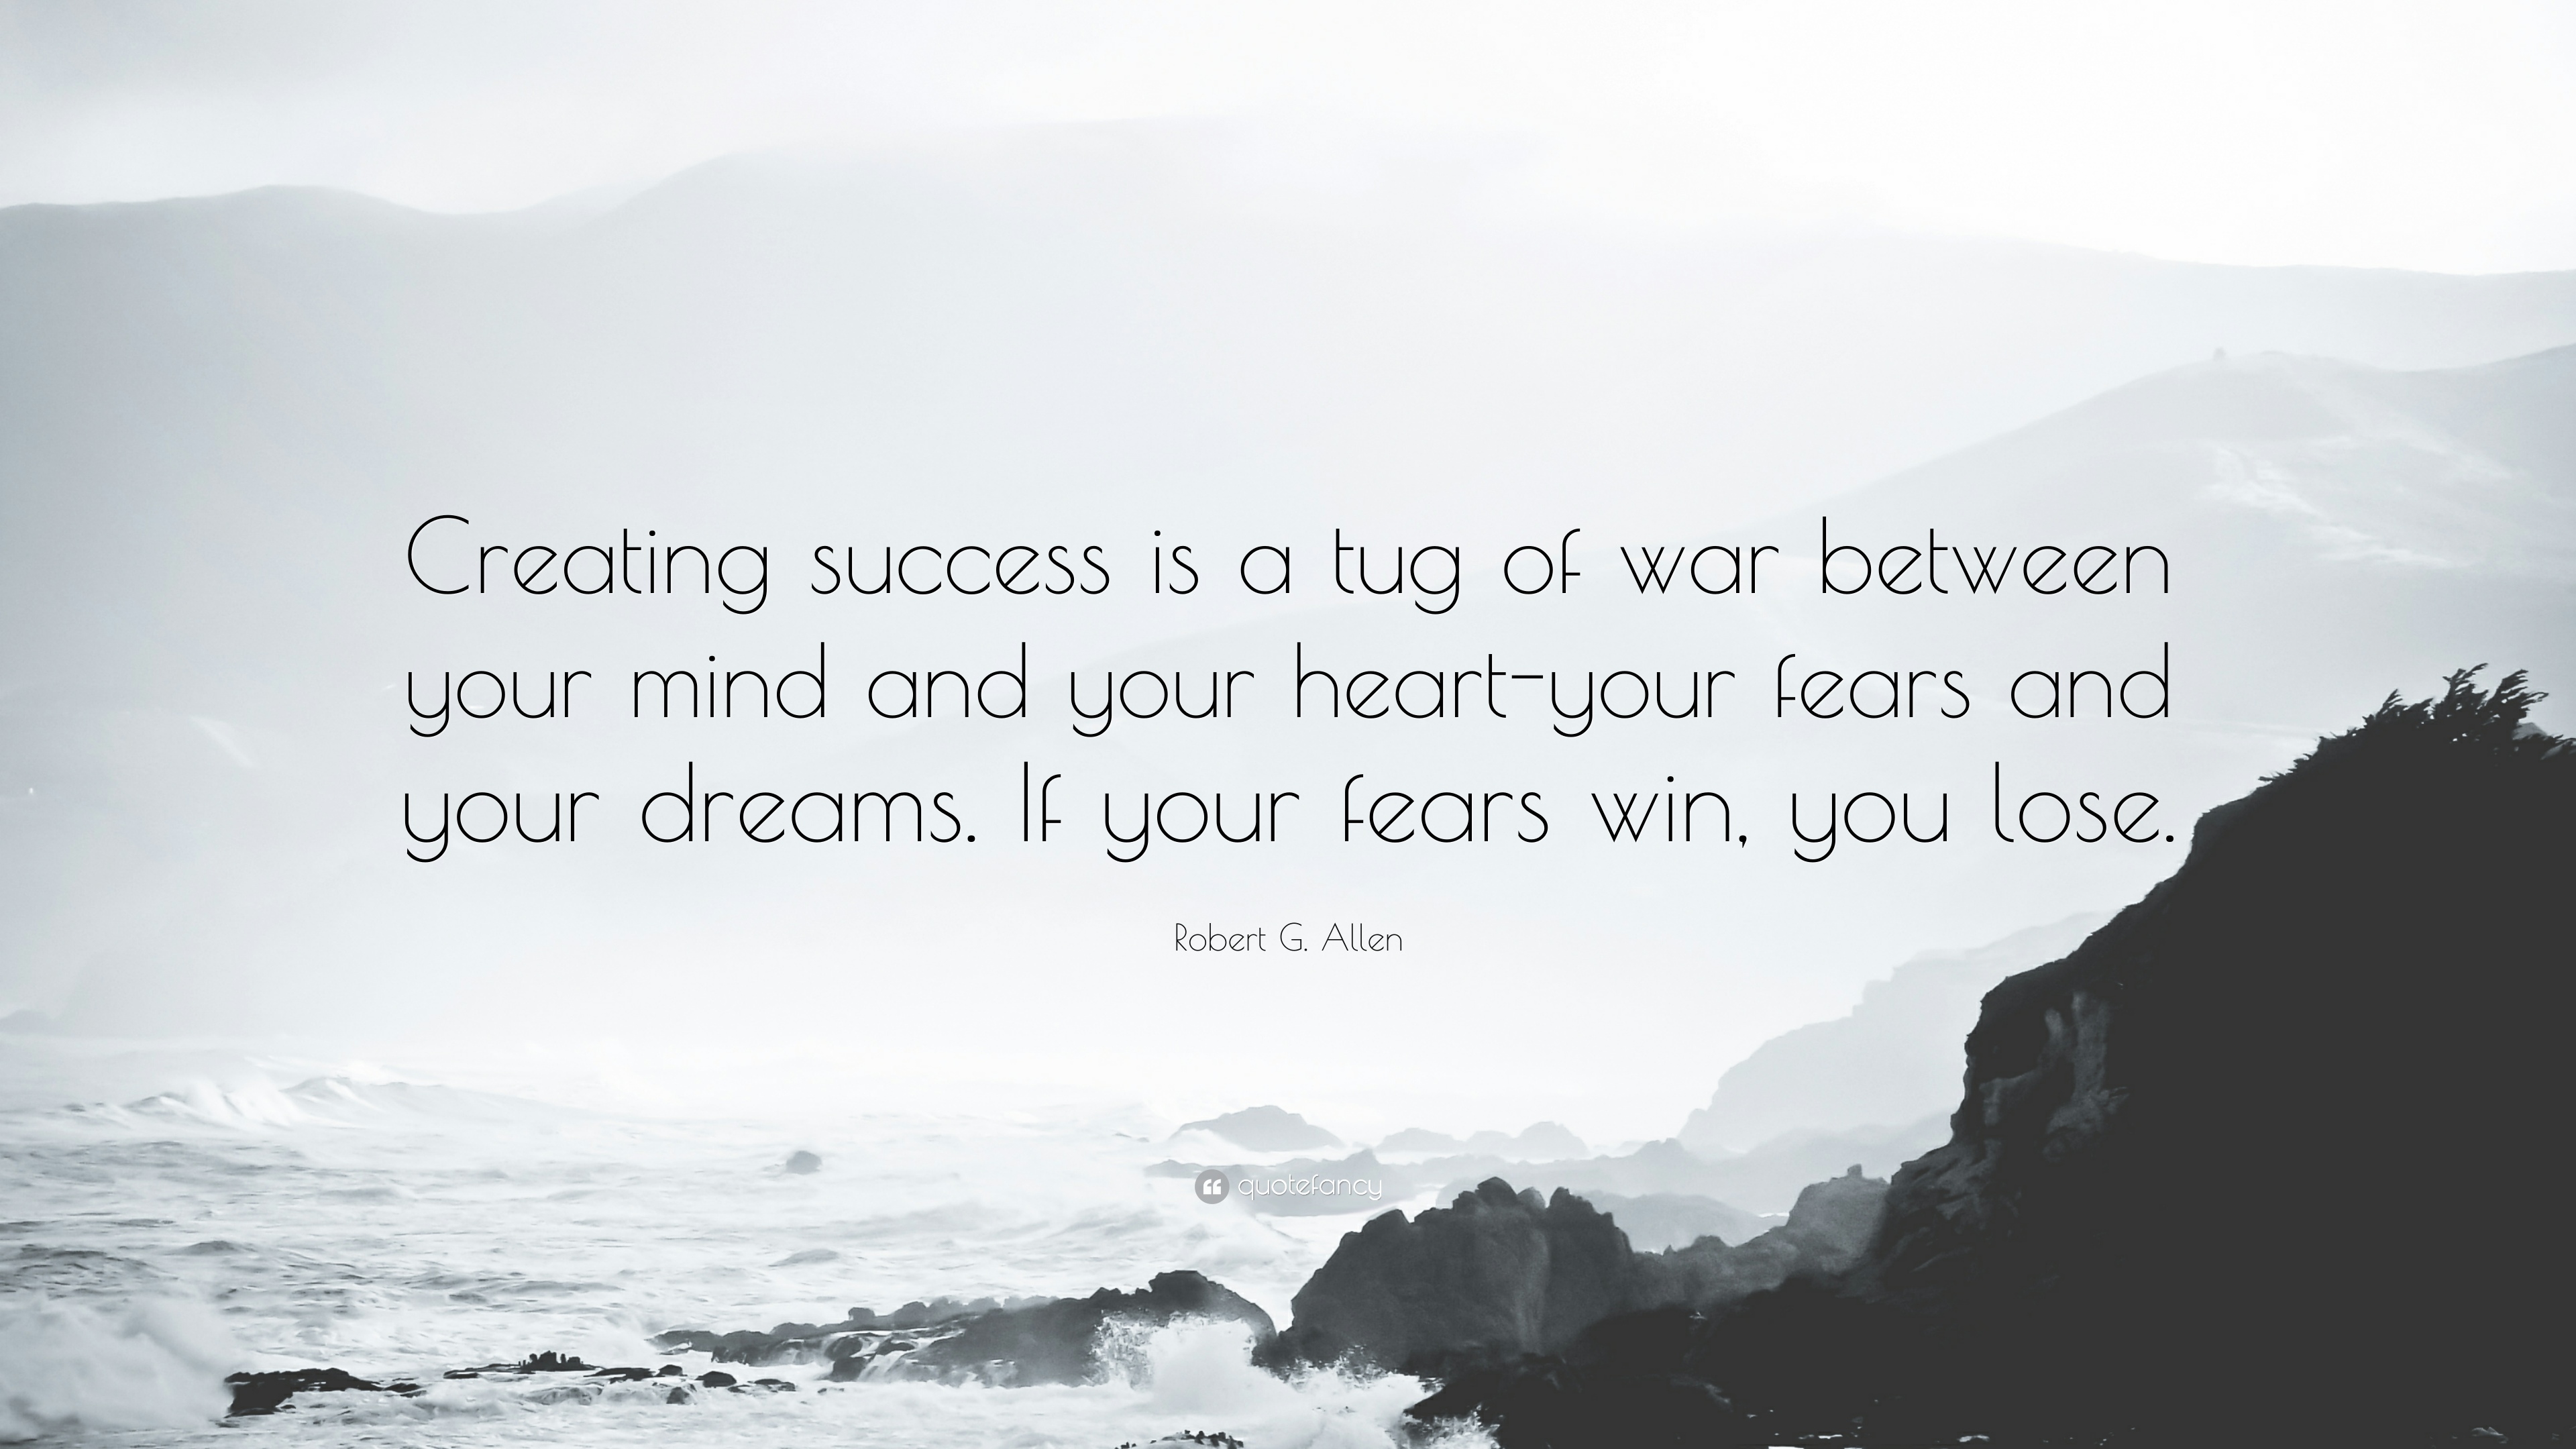 Robert G. Allen Quote: “Creating success is a tug of war between